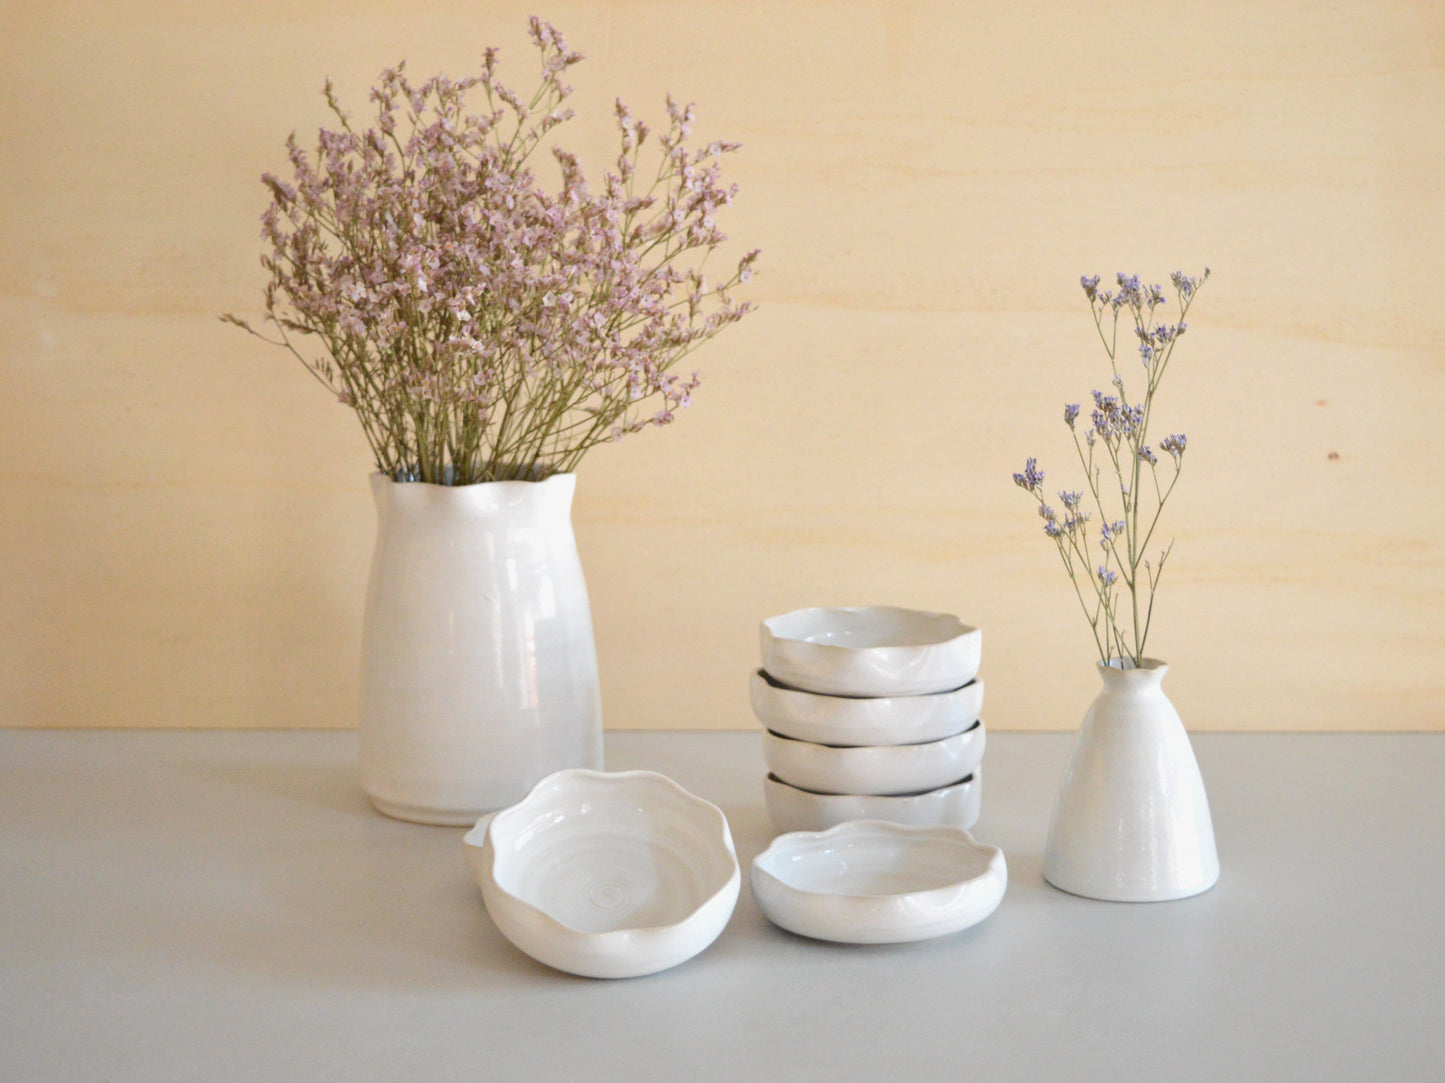 FIORE Ceramic Decorative Vase Handmade in Italy